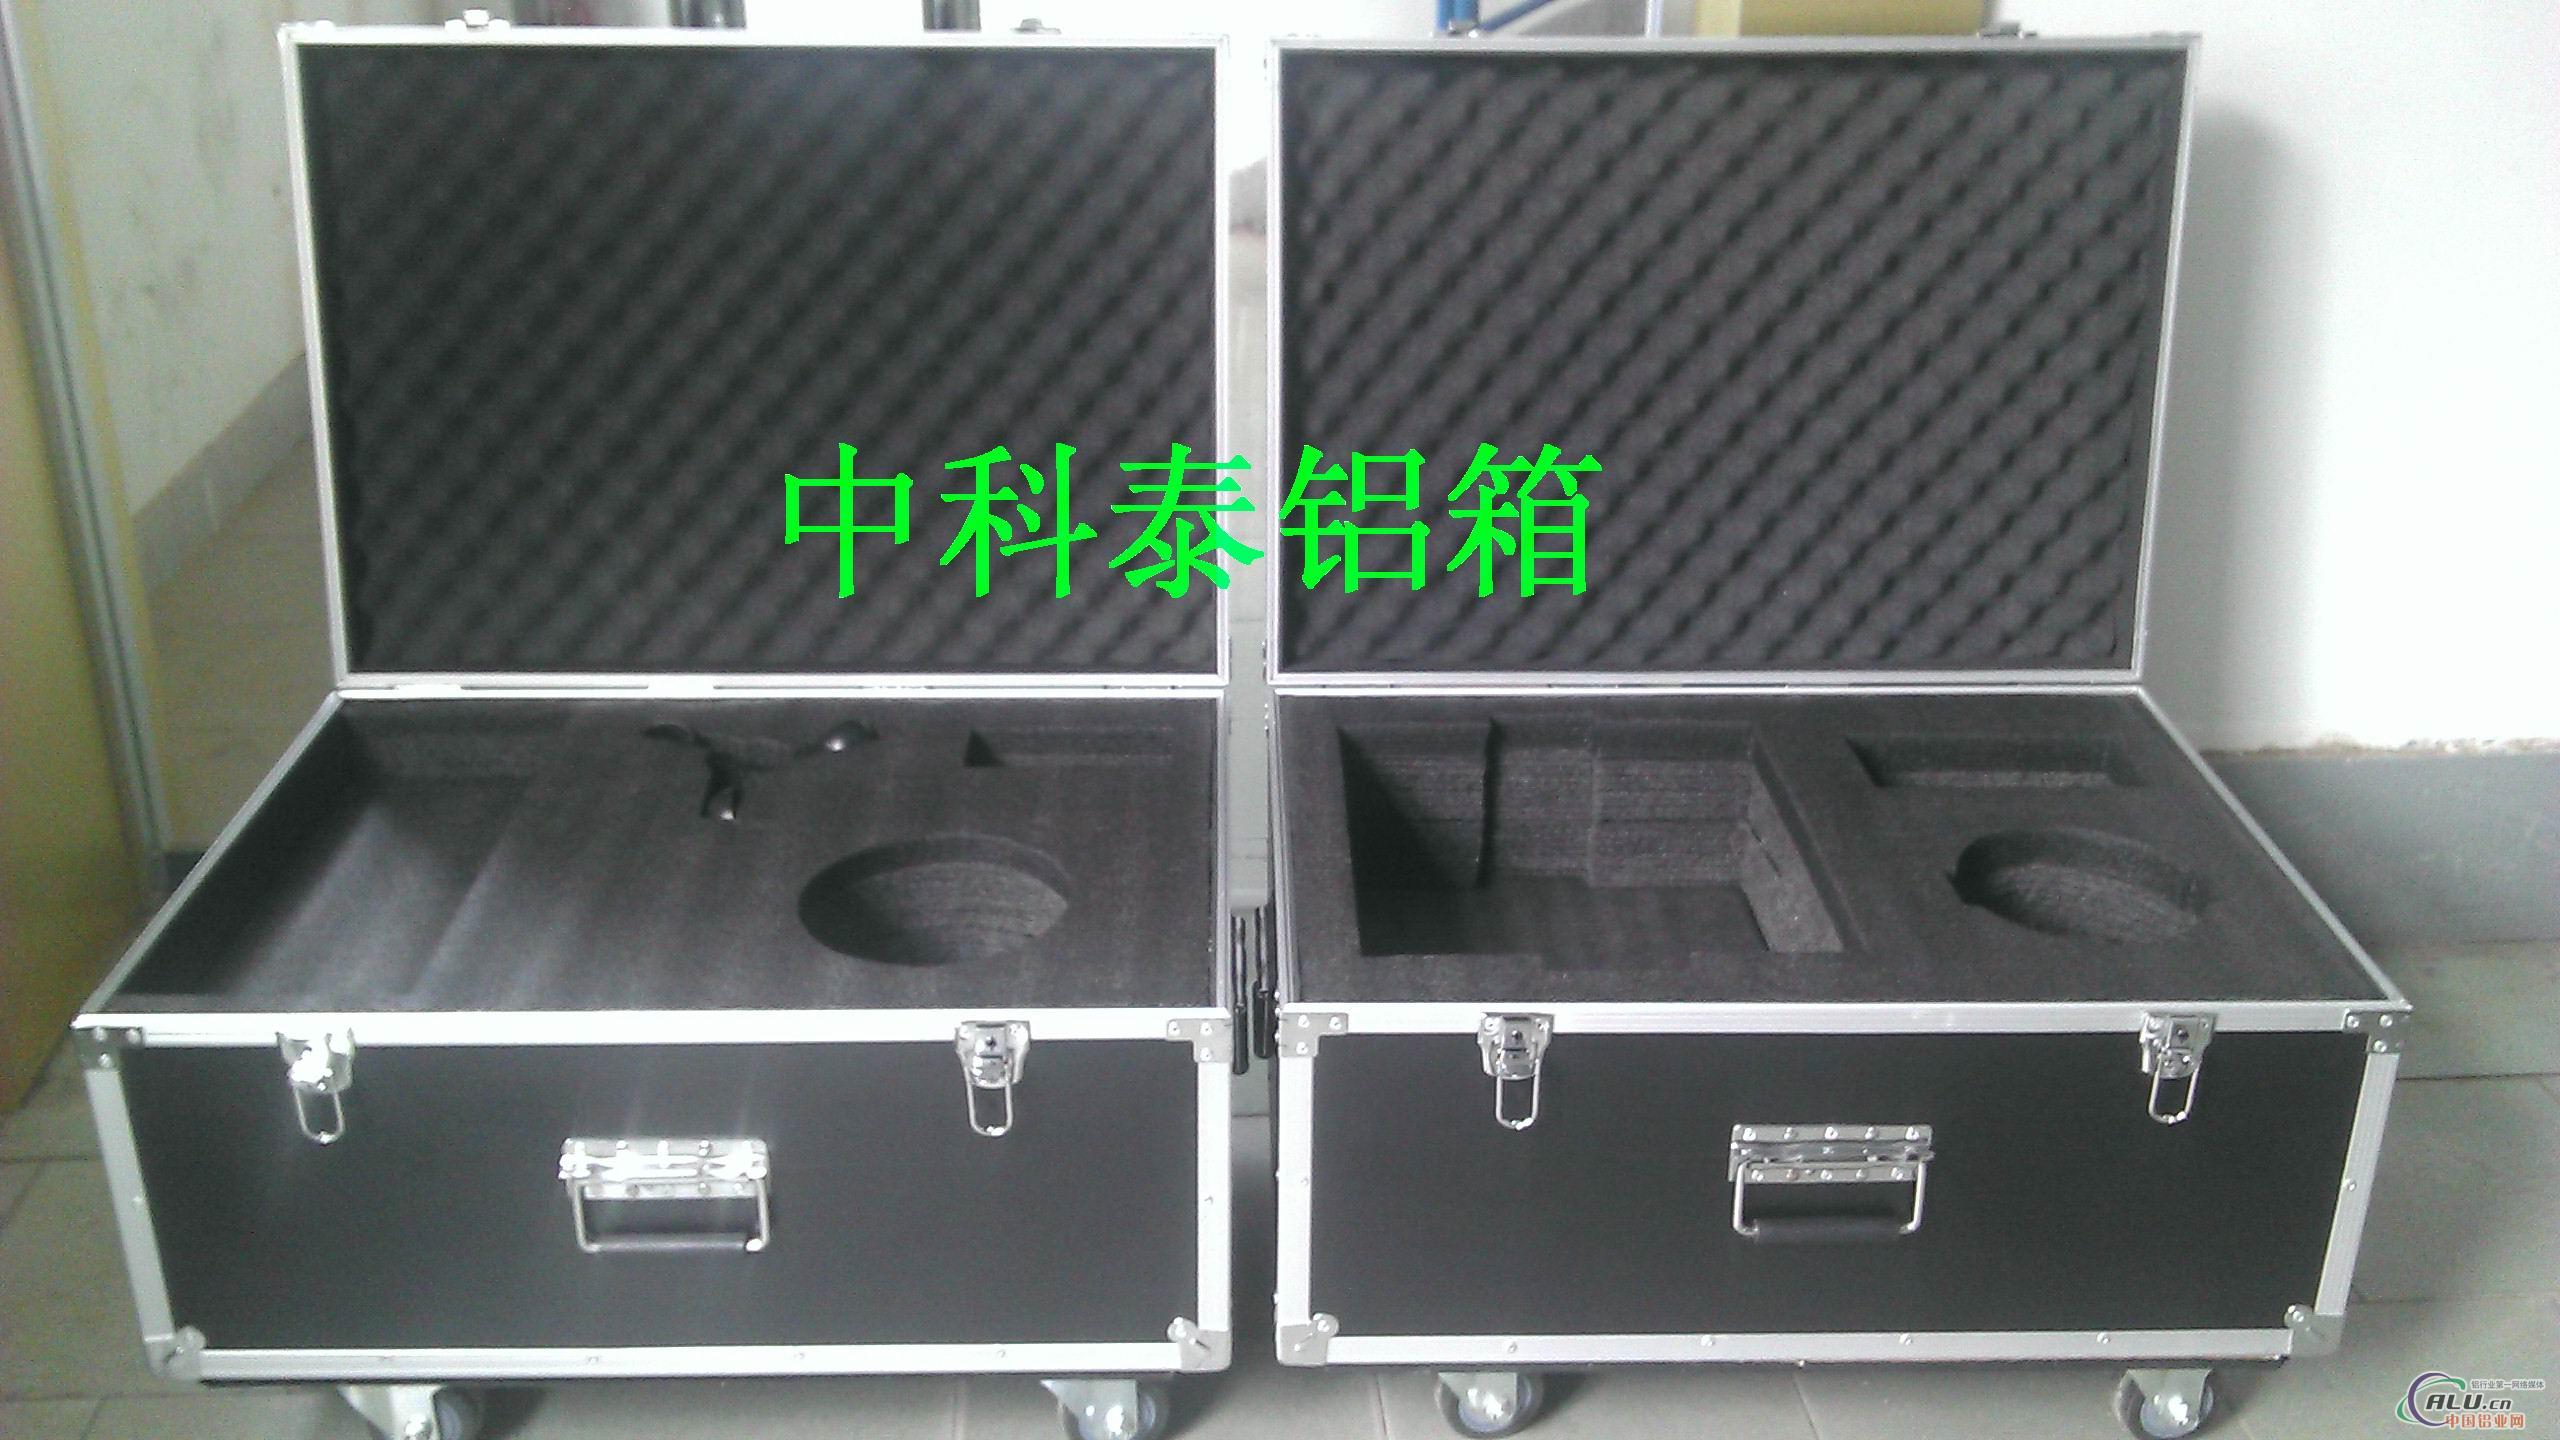 供应铝箱工具箱、铝箱包装箱、铝合金箱、铝箱